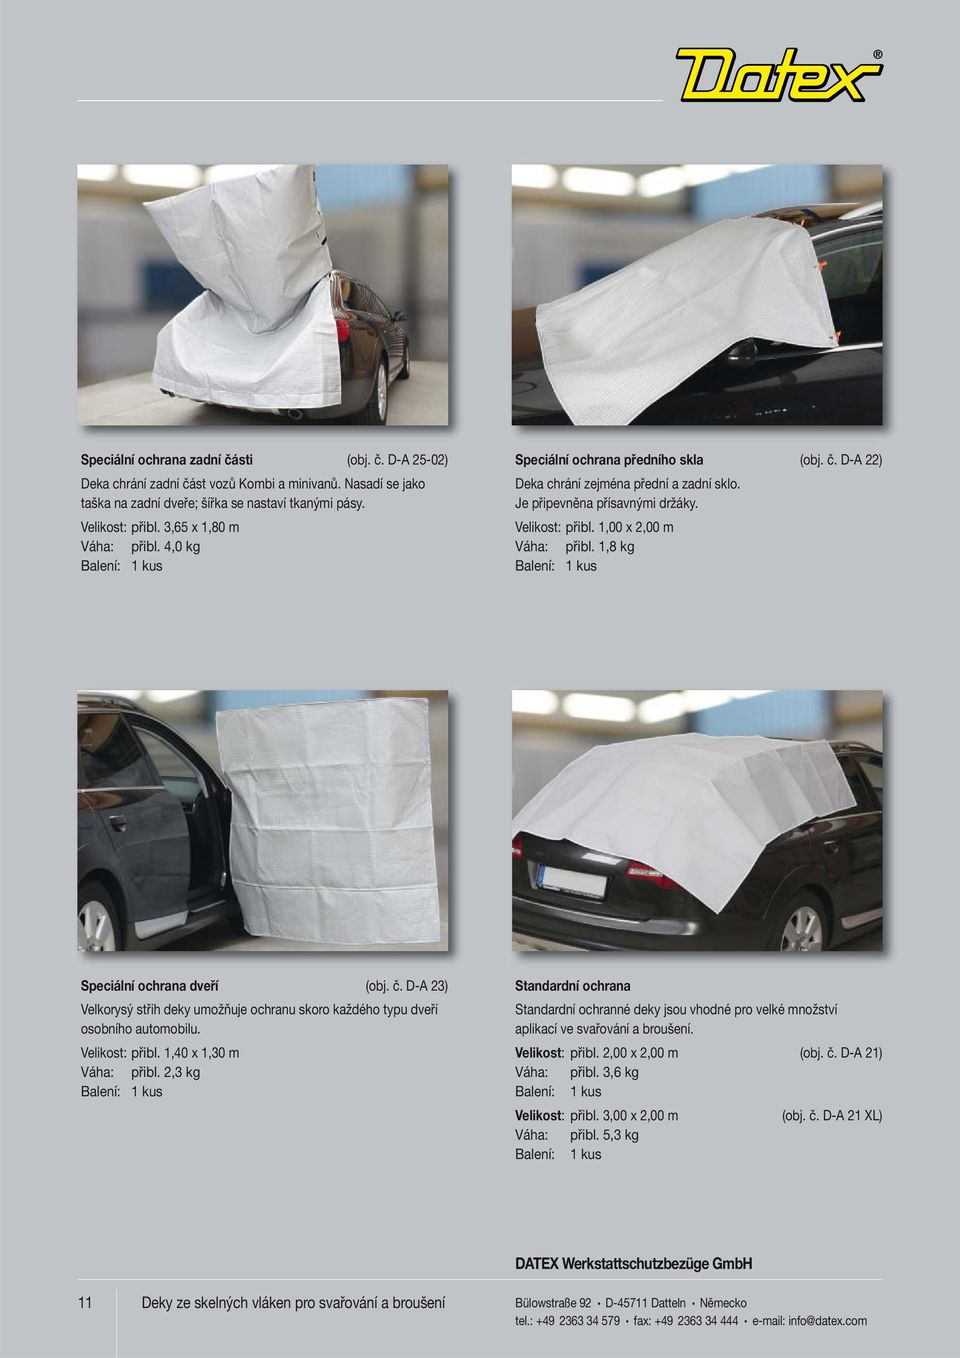 1,8 kg Speciální ochrana dveří (obj. č. D-A 23) Velkorysý střih deky umožňuje ochranu skoro každého typu dveří osobního automobilu. Velikost: přibl. 1,40 x 1,30 m Váha: přibl.